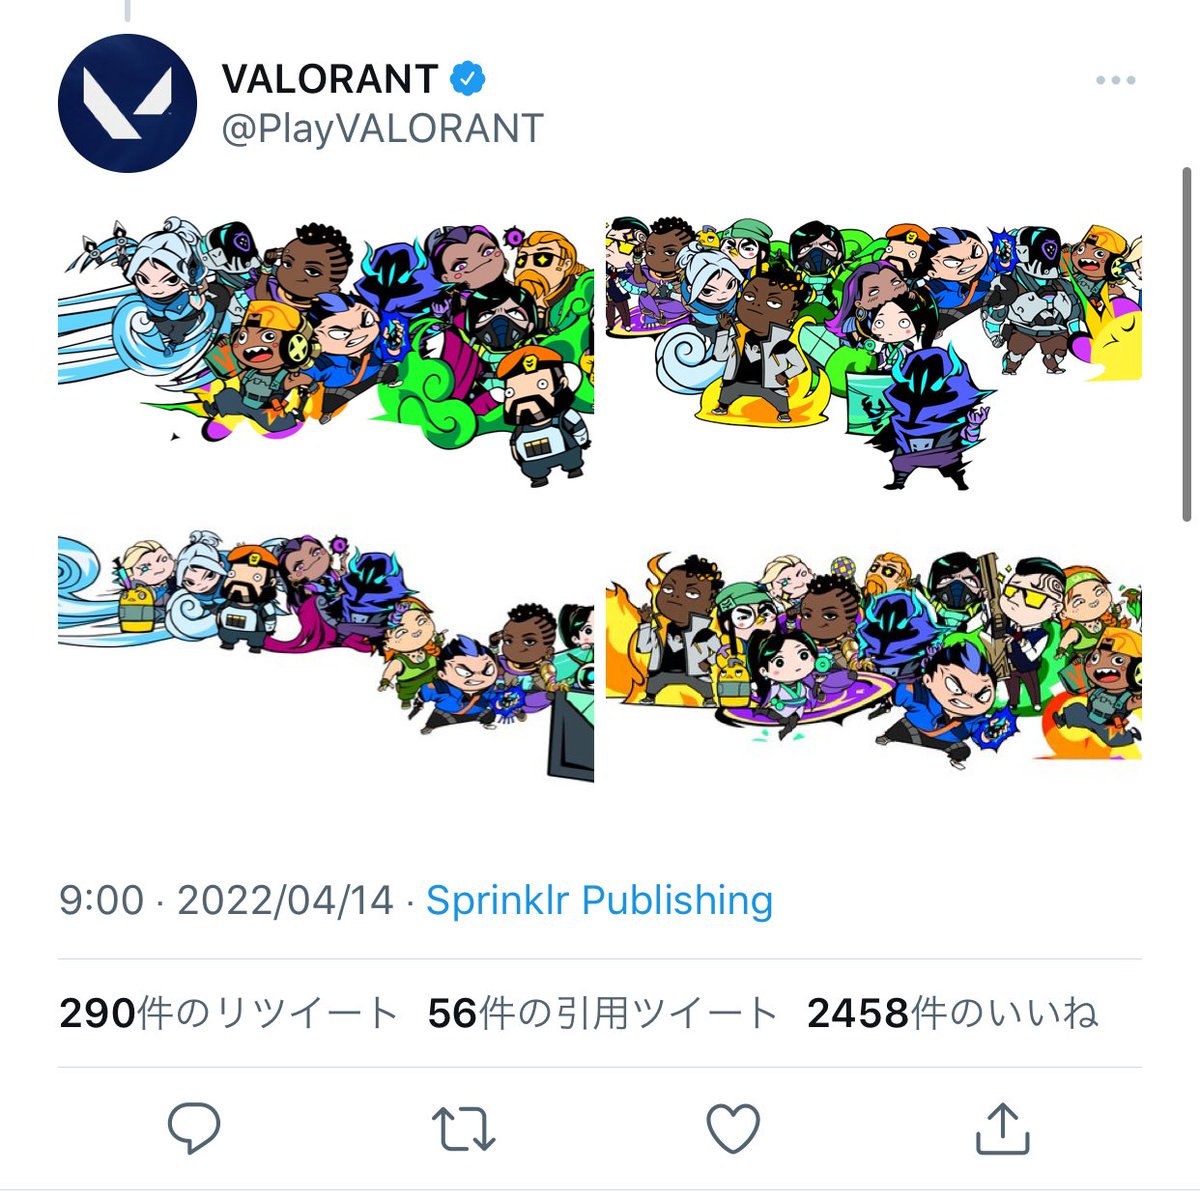 「べつに、、、、😑😑😑😑
#VALORANT #ValorantArt 」|ちのこのイラスト